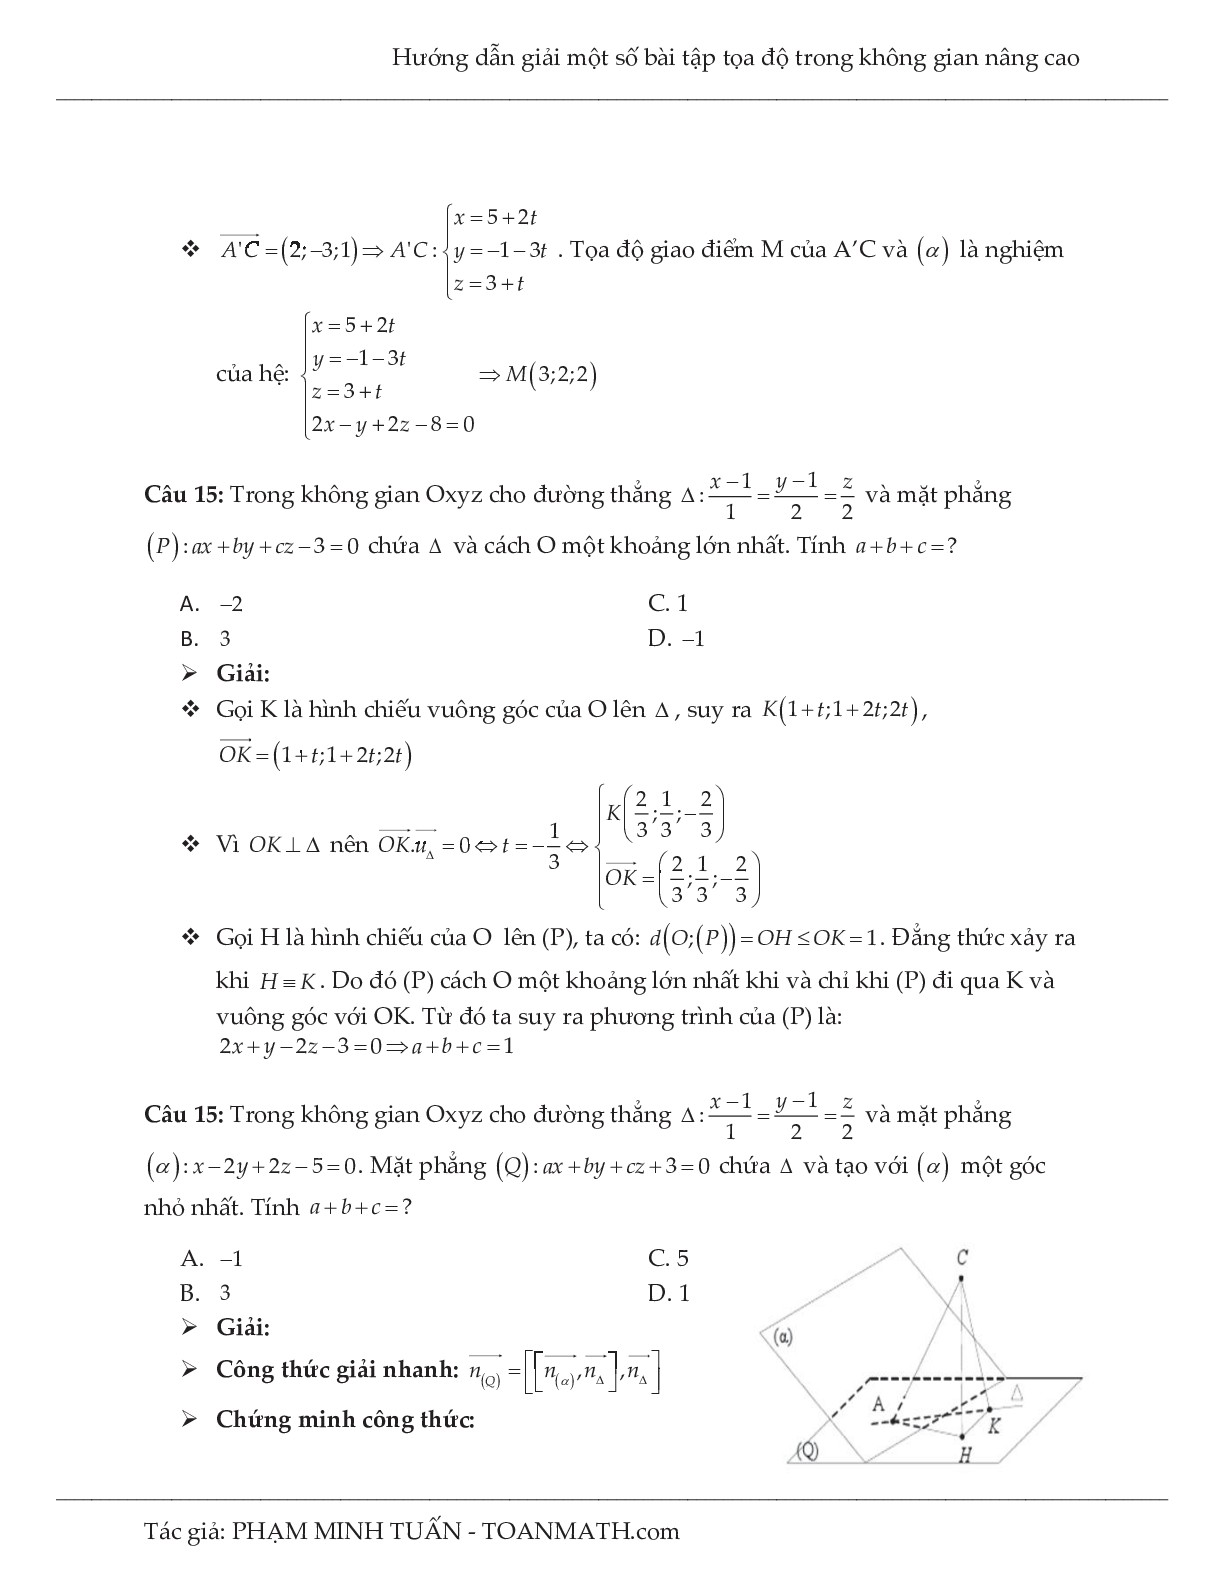 Hướng dẫn giải một số bài tập tọa độ trong không gian nâng cao môn Toán lớp 12 (trang 10)